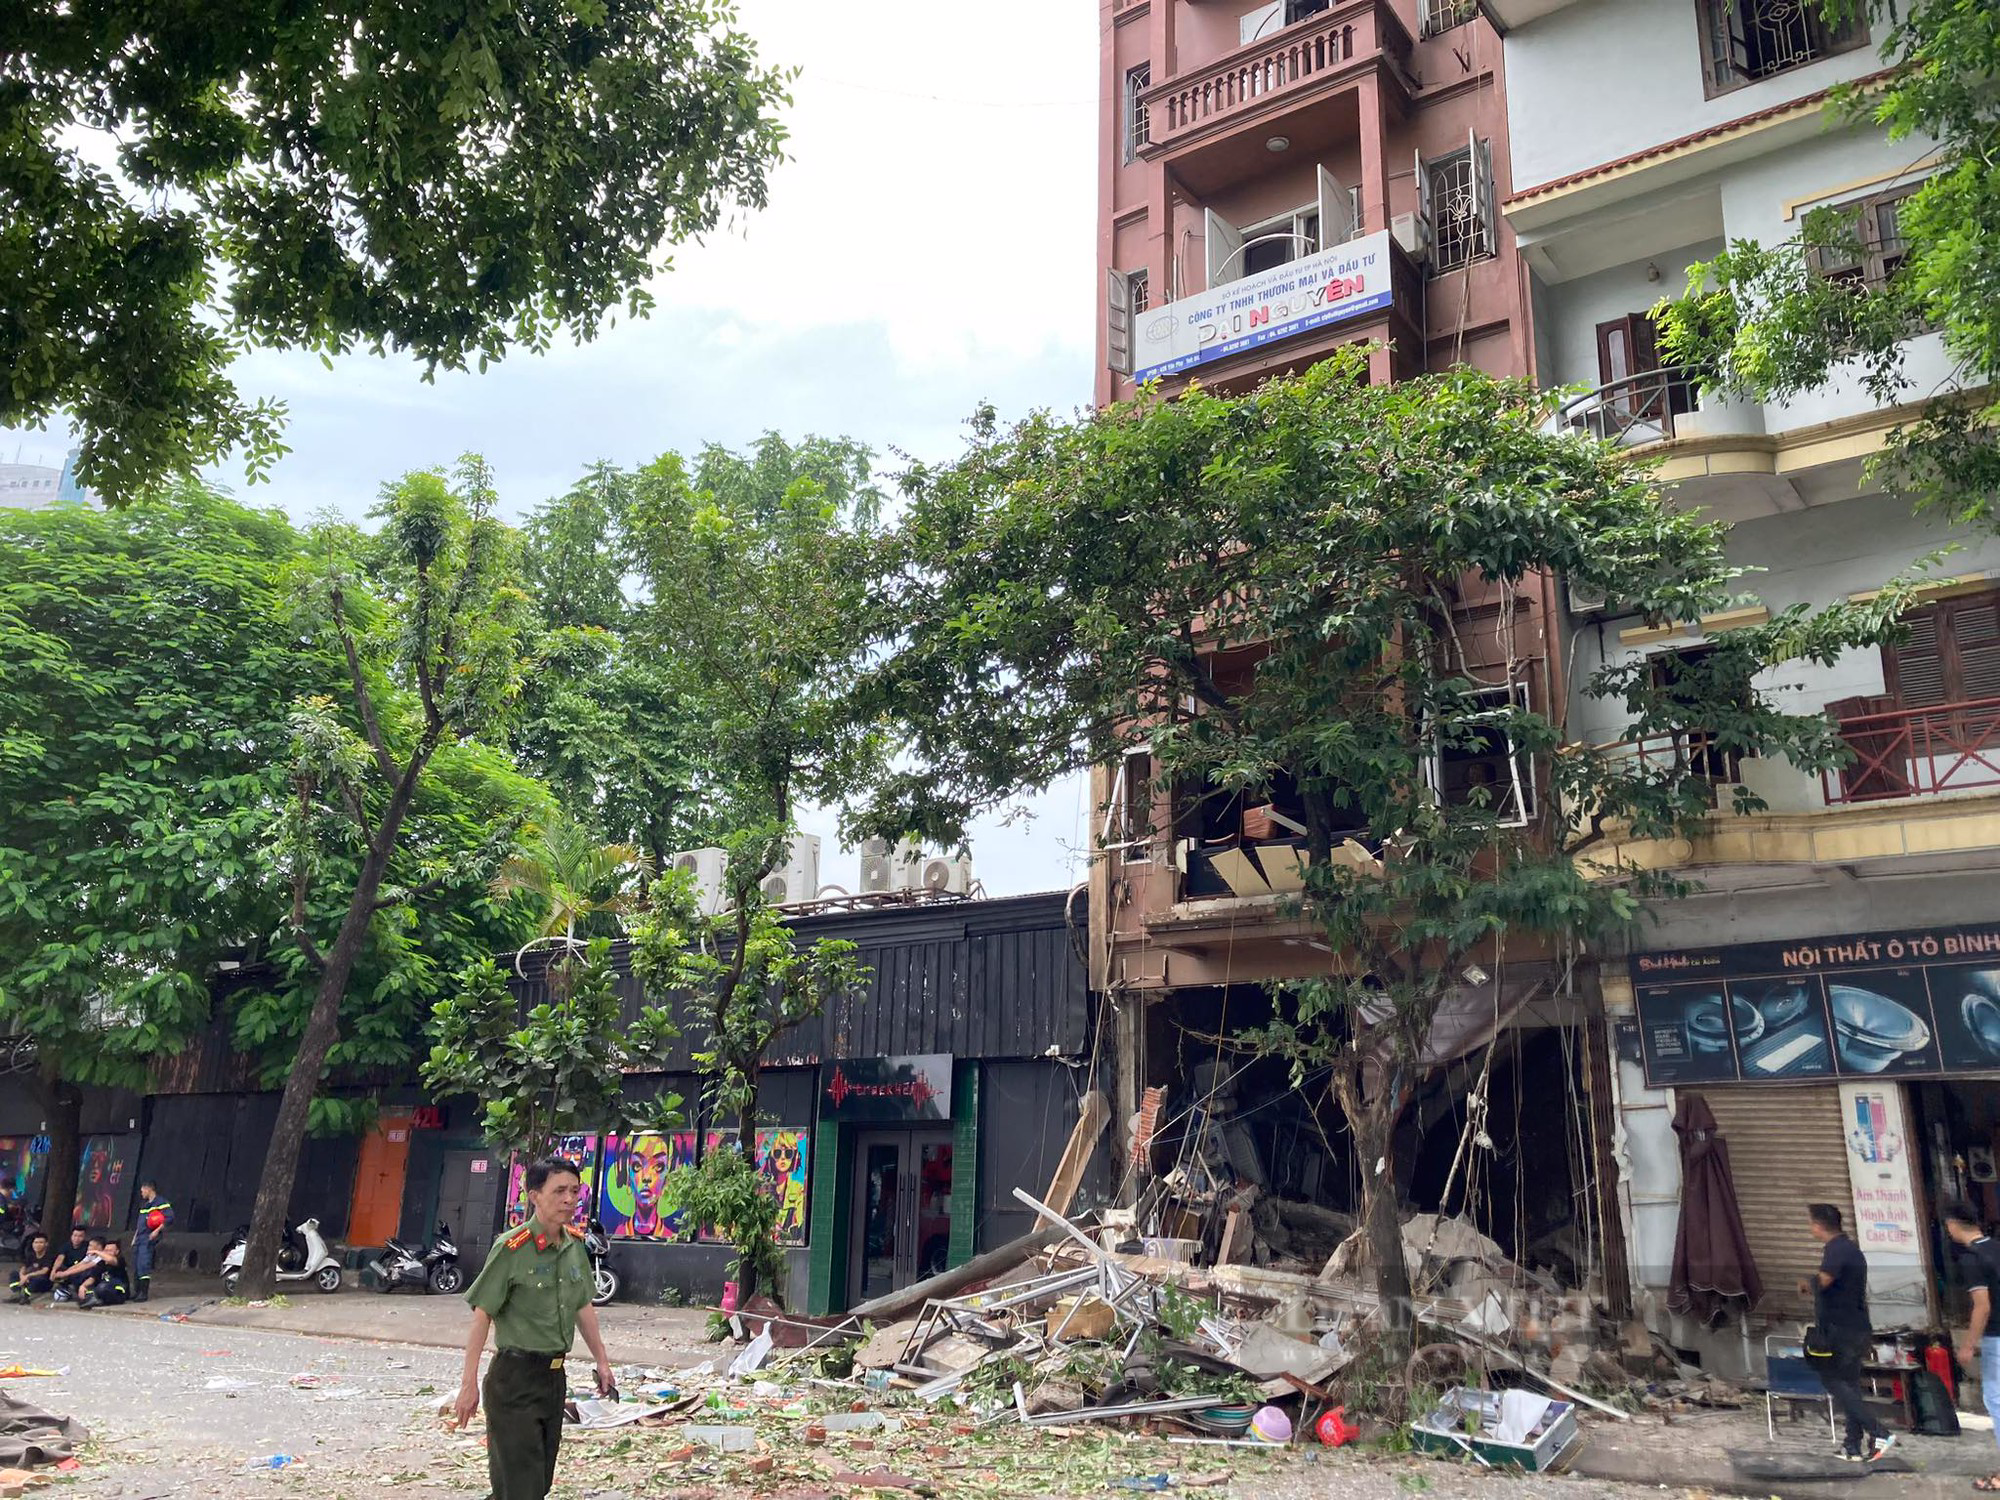 Hiện trường tan hoang sau nổ lớn cực lớn quán lẩu ở phố Yên Phụ, nhiều người bị thương nặng - Ảnh 1.